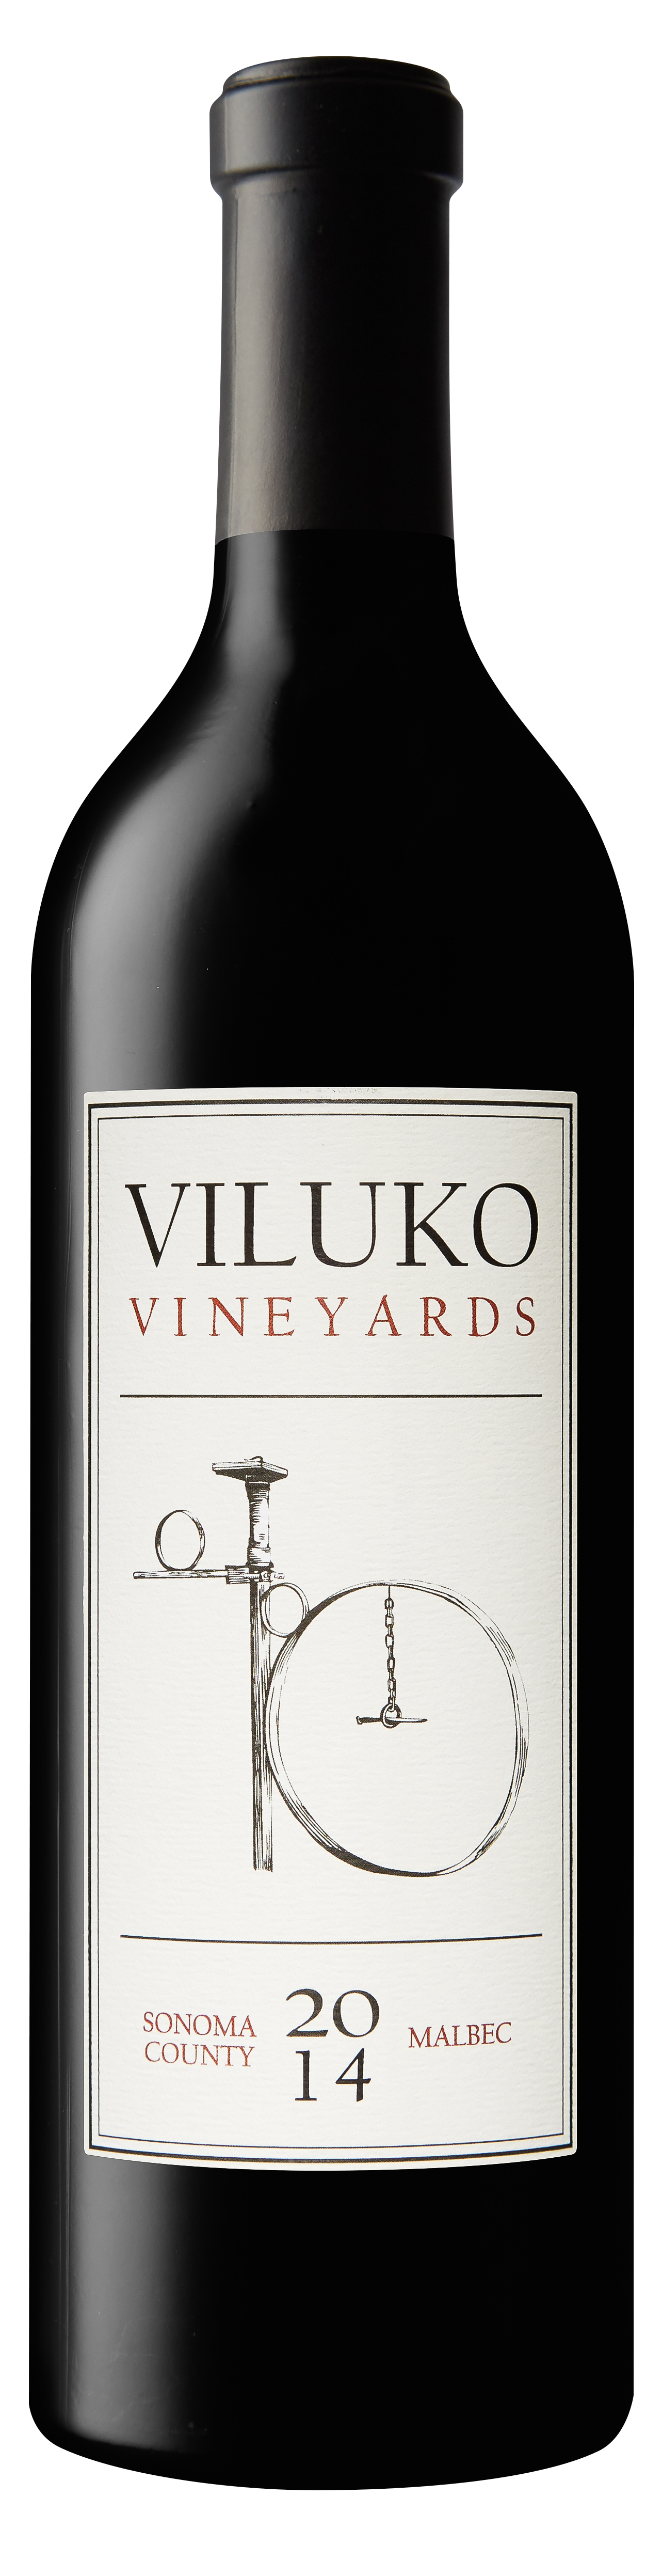 2014 Viluko Vineyards Malbec